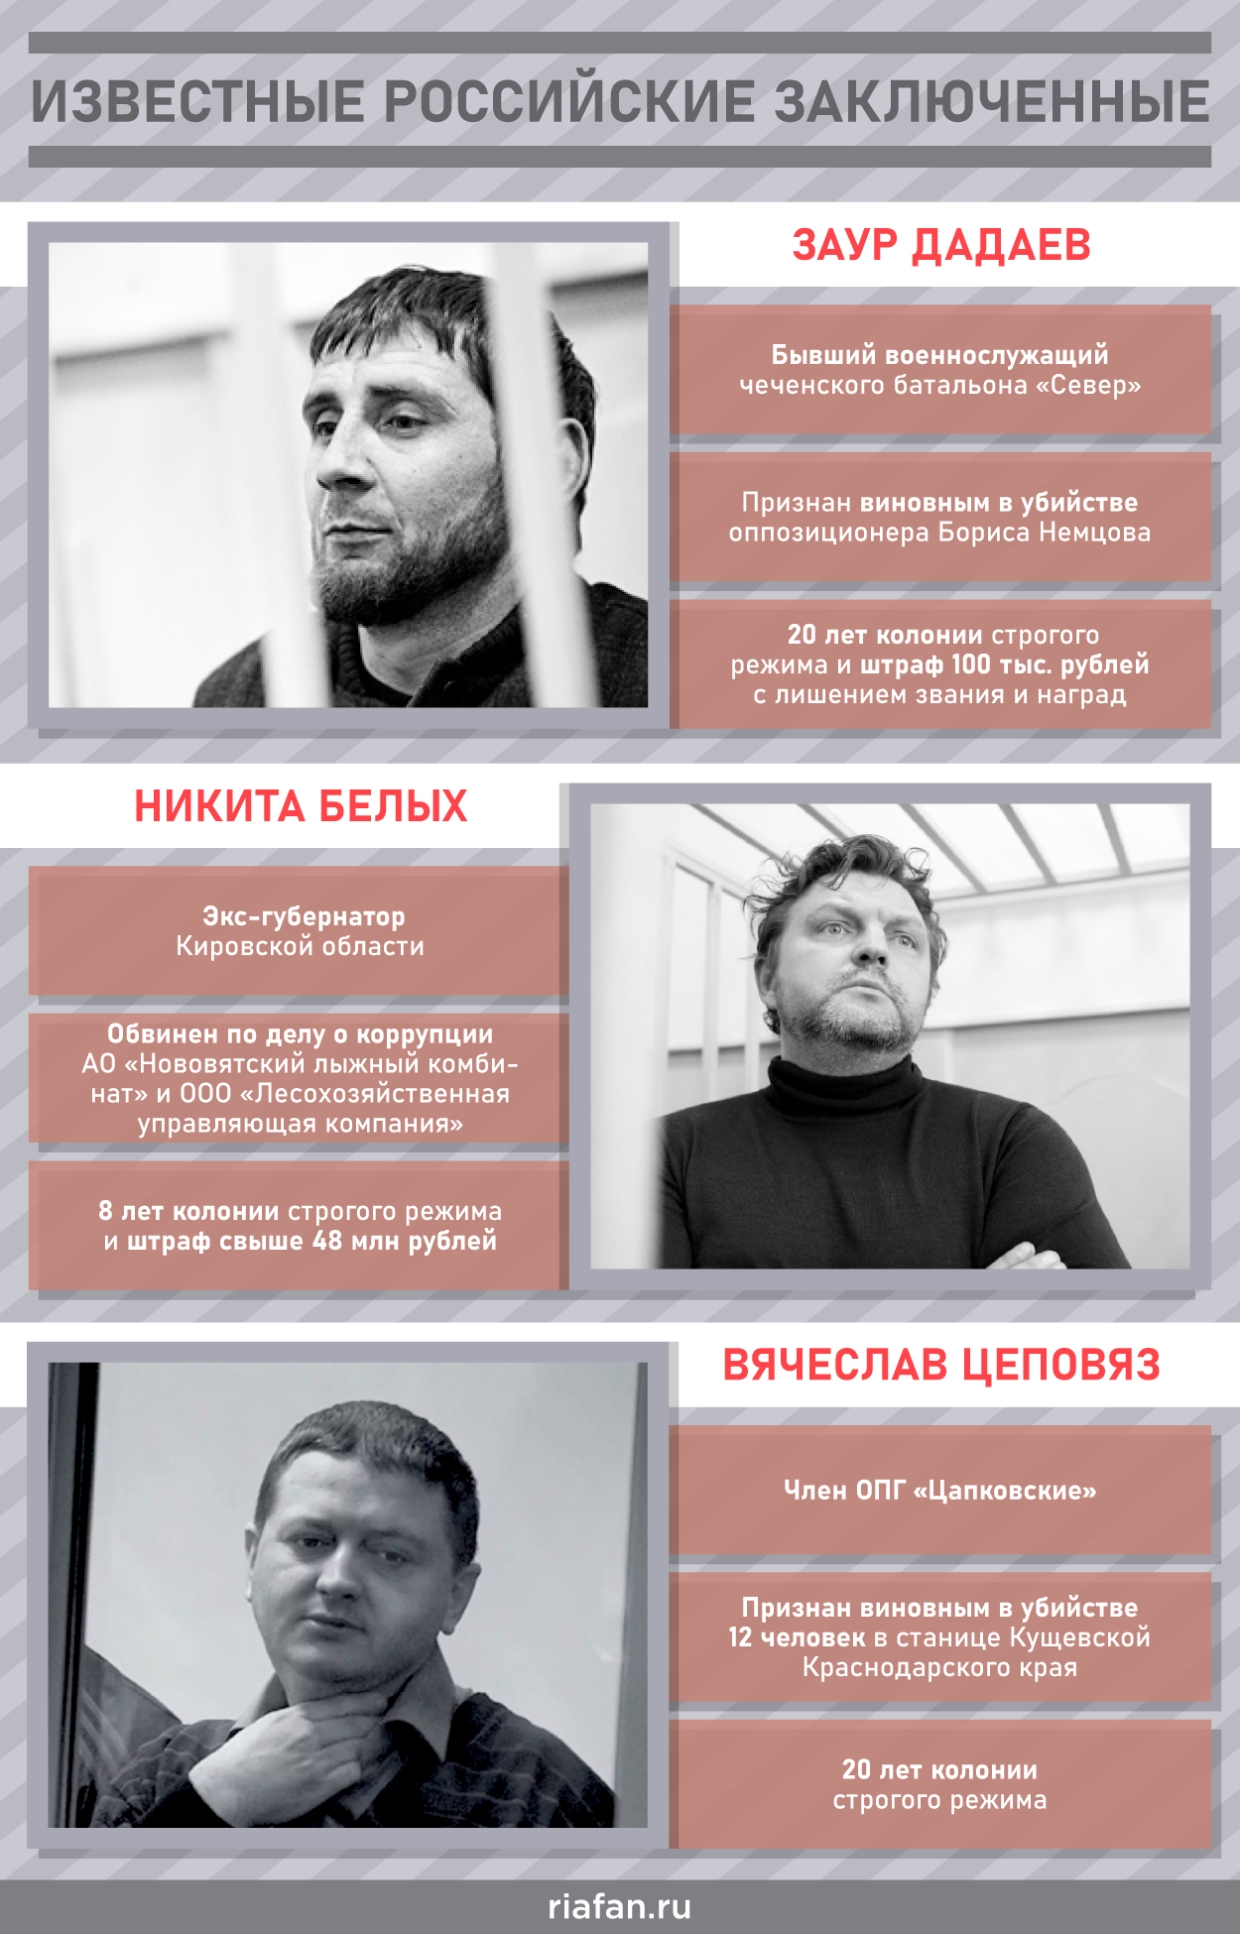 «Хорошо сидим»: Как устроились «успешные арестанты» в российских тюрьмах